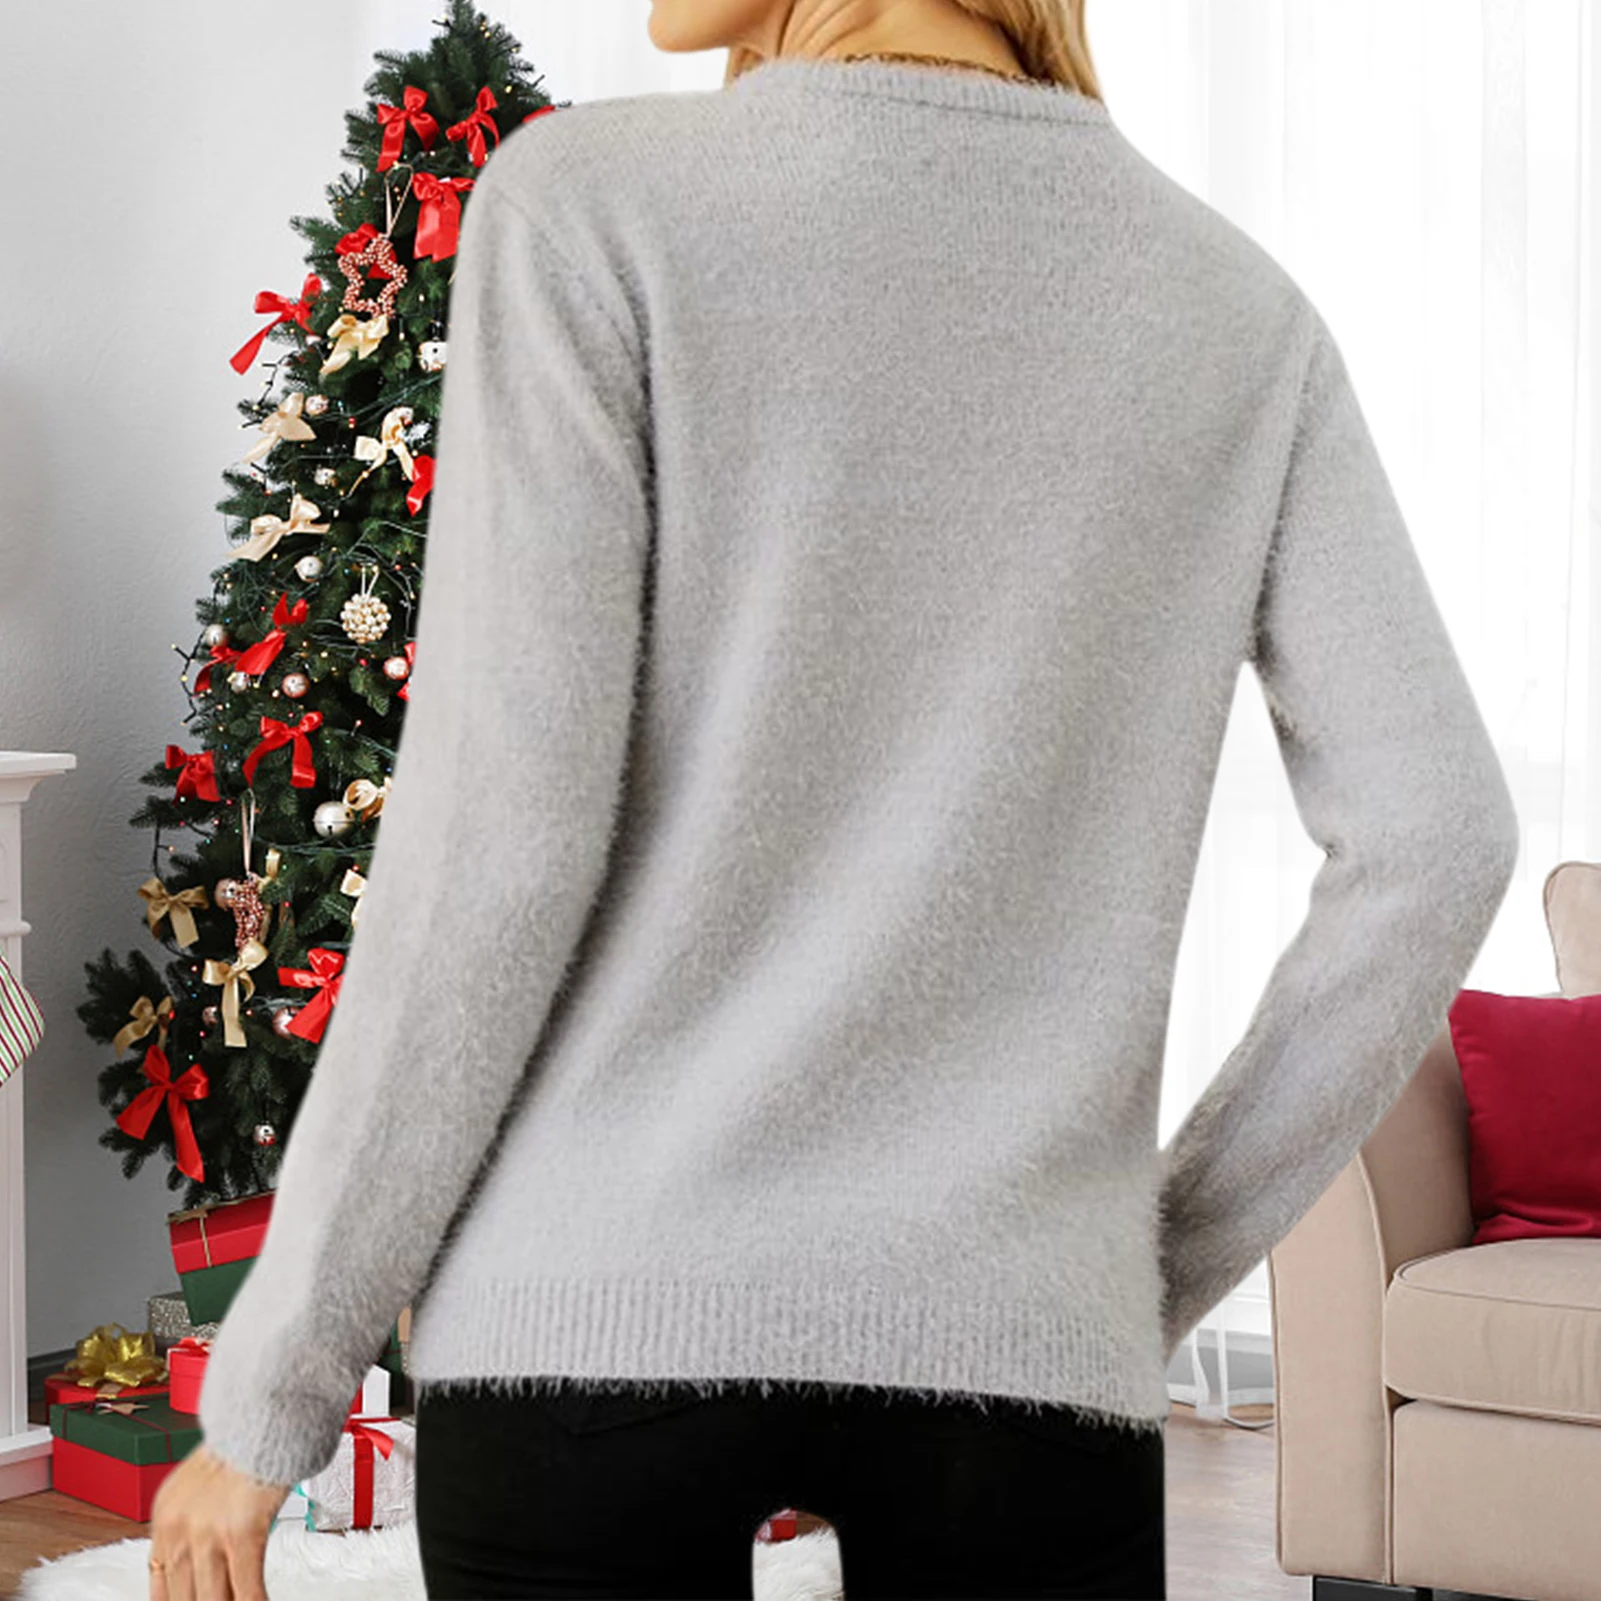 

Женский трикотажный свитер свободного кроя с рисунком медведя, трикотажный топ, свитер с длинным рукавом и круглым вырезом, рождественский стиль, одежда для отпуска